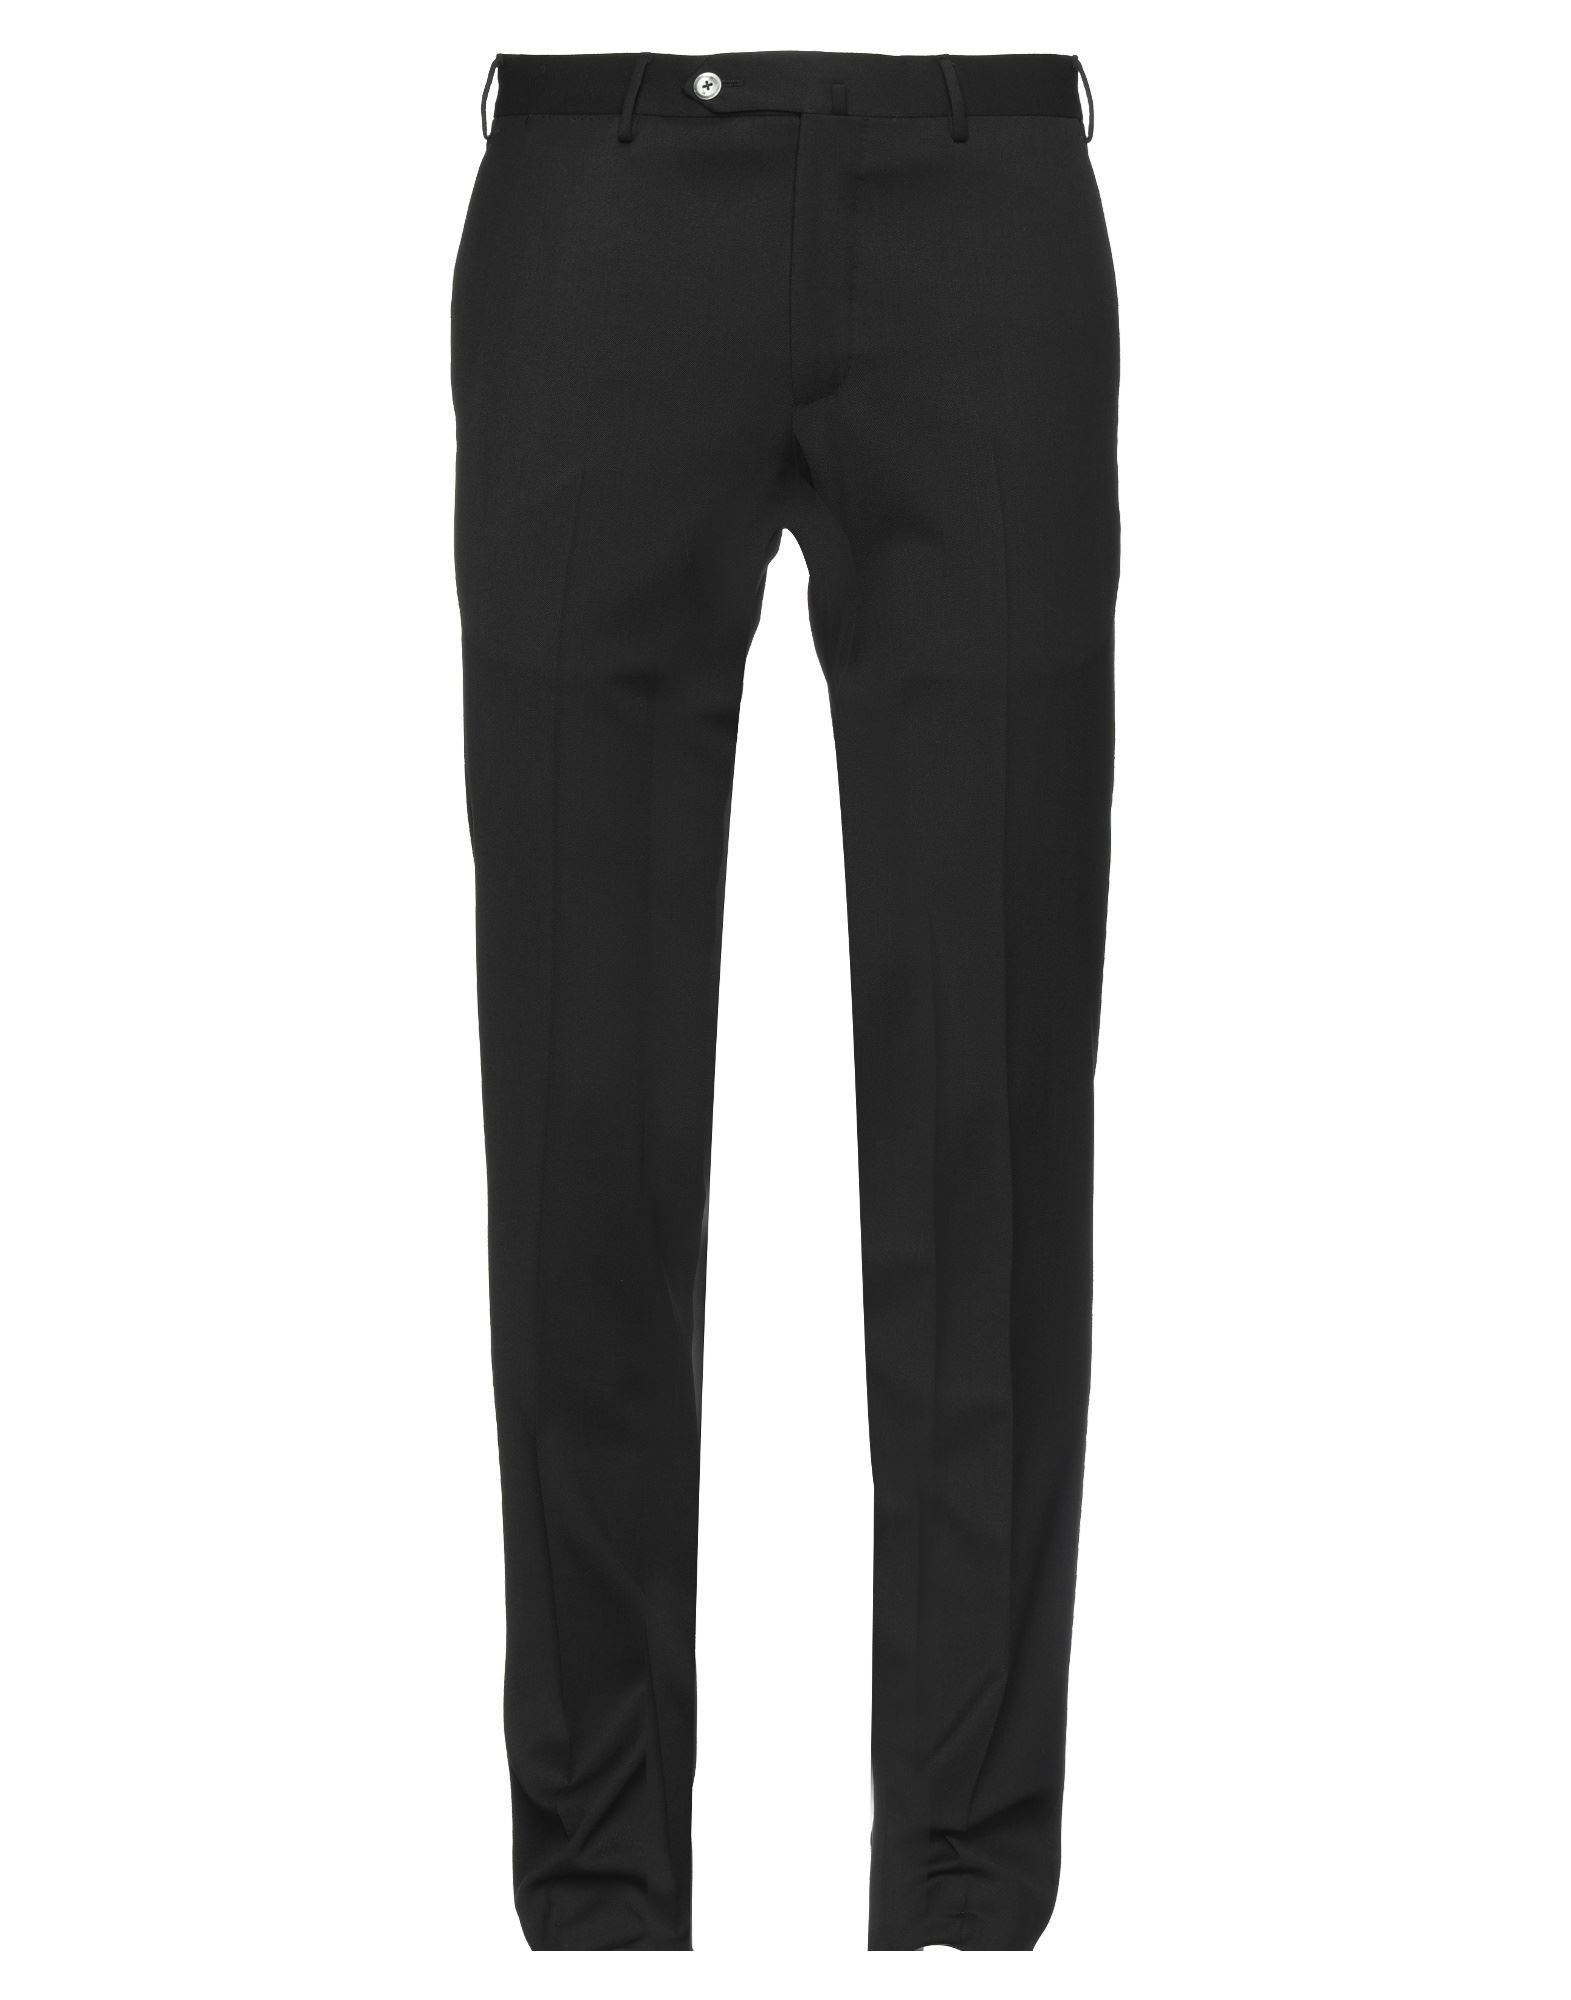 Pt Torino Man Pants Black Size 38 Polyester, Wool, Elastane